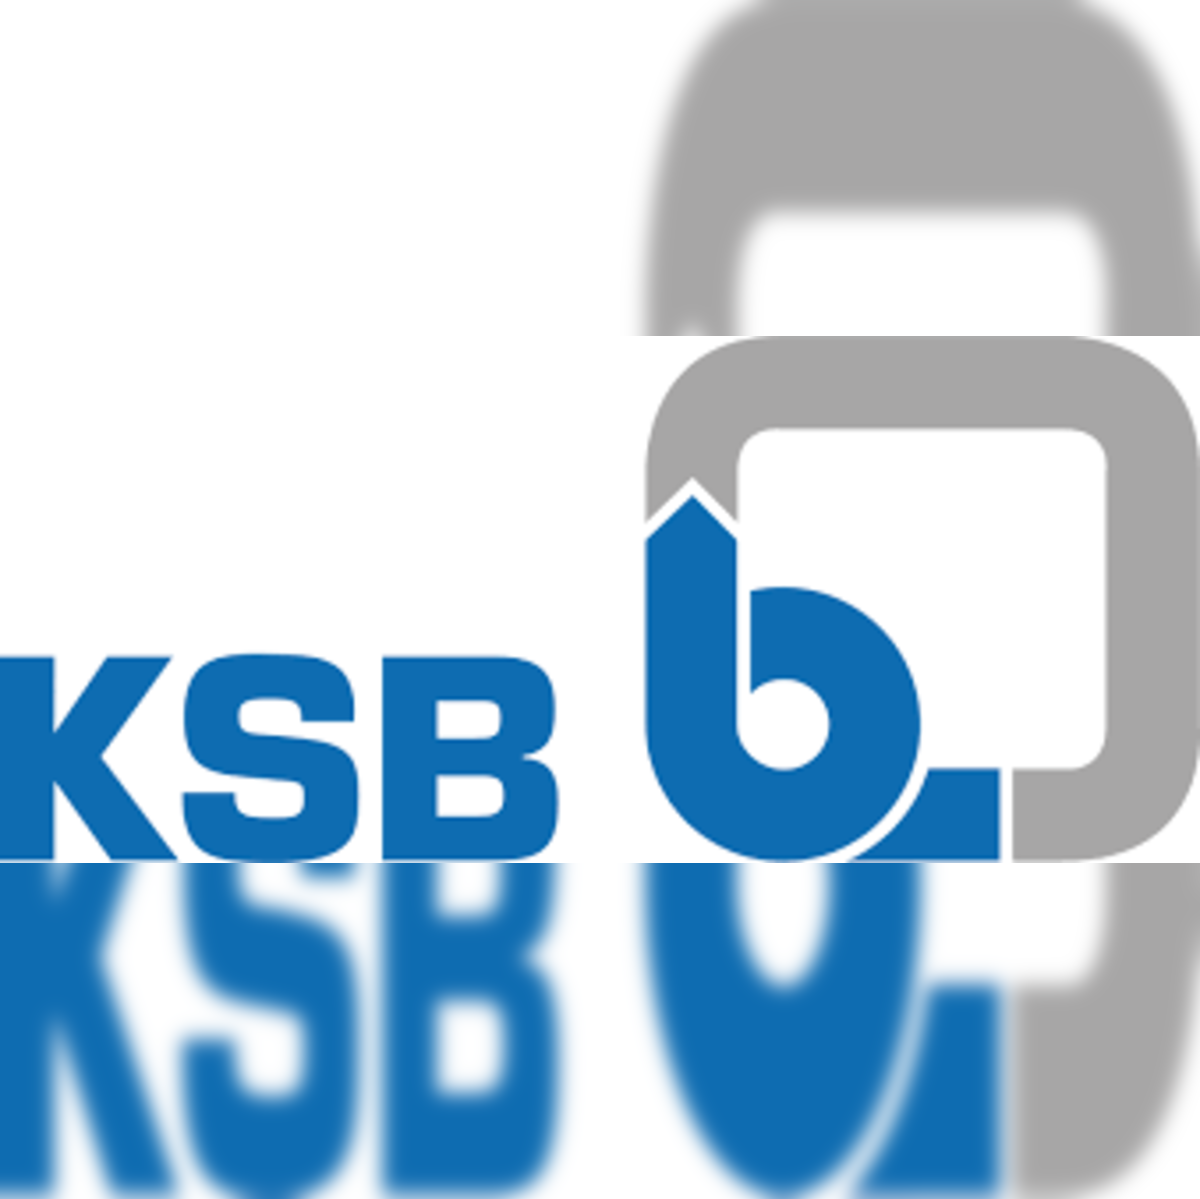 Ksb: Over 12 Royalty-Free Licensable Stock Vectors & Vector Art |  Shutterstock